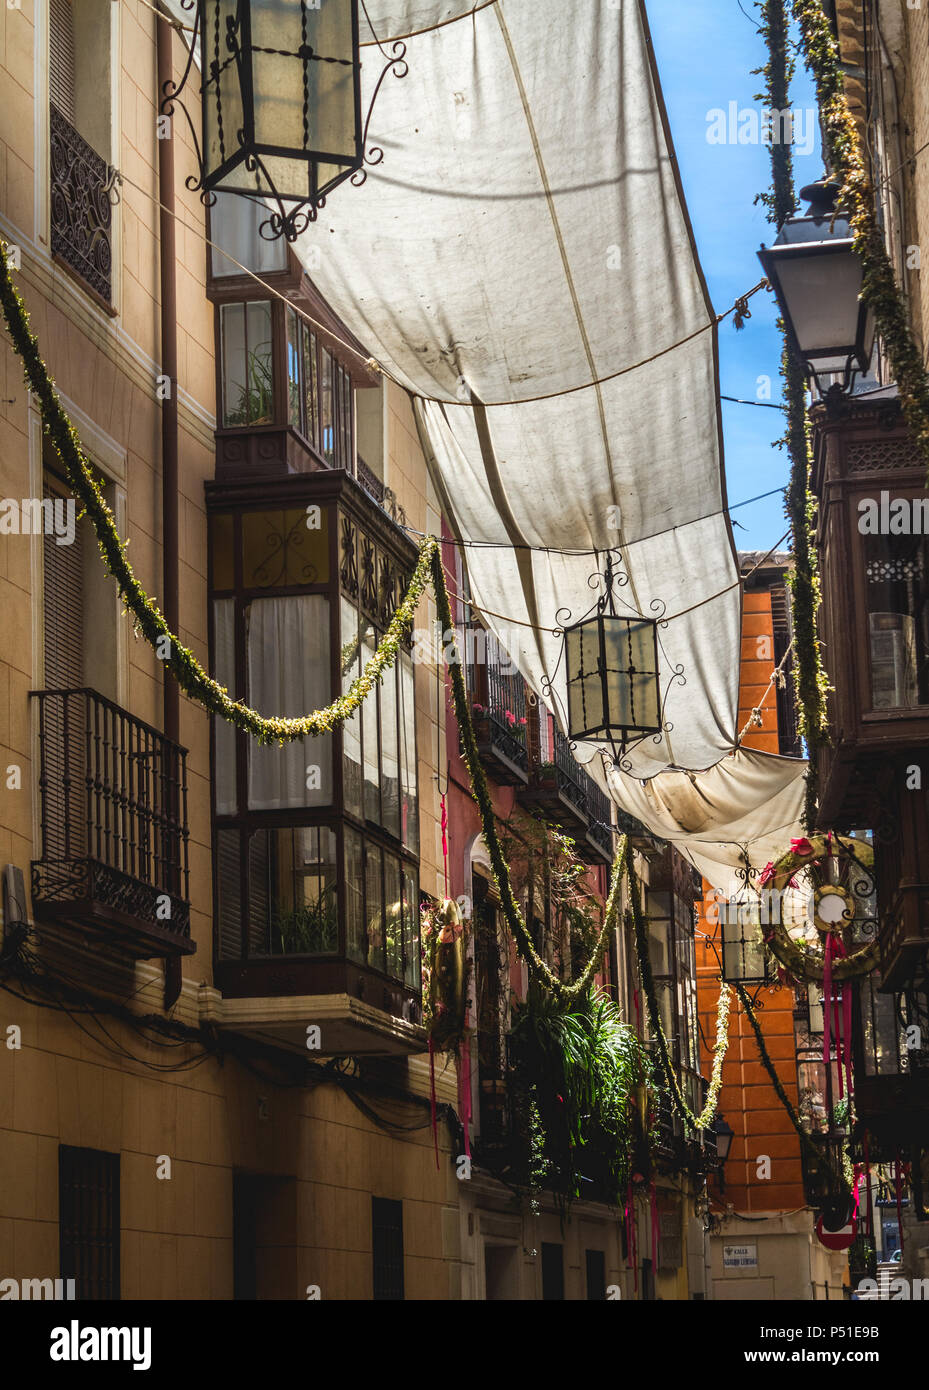 Balcon et des décorations en espagnol ville historique. Tolède, Espagne Banque D'Images